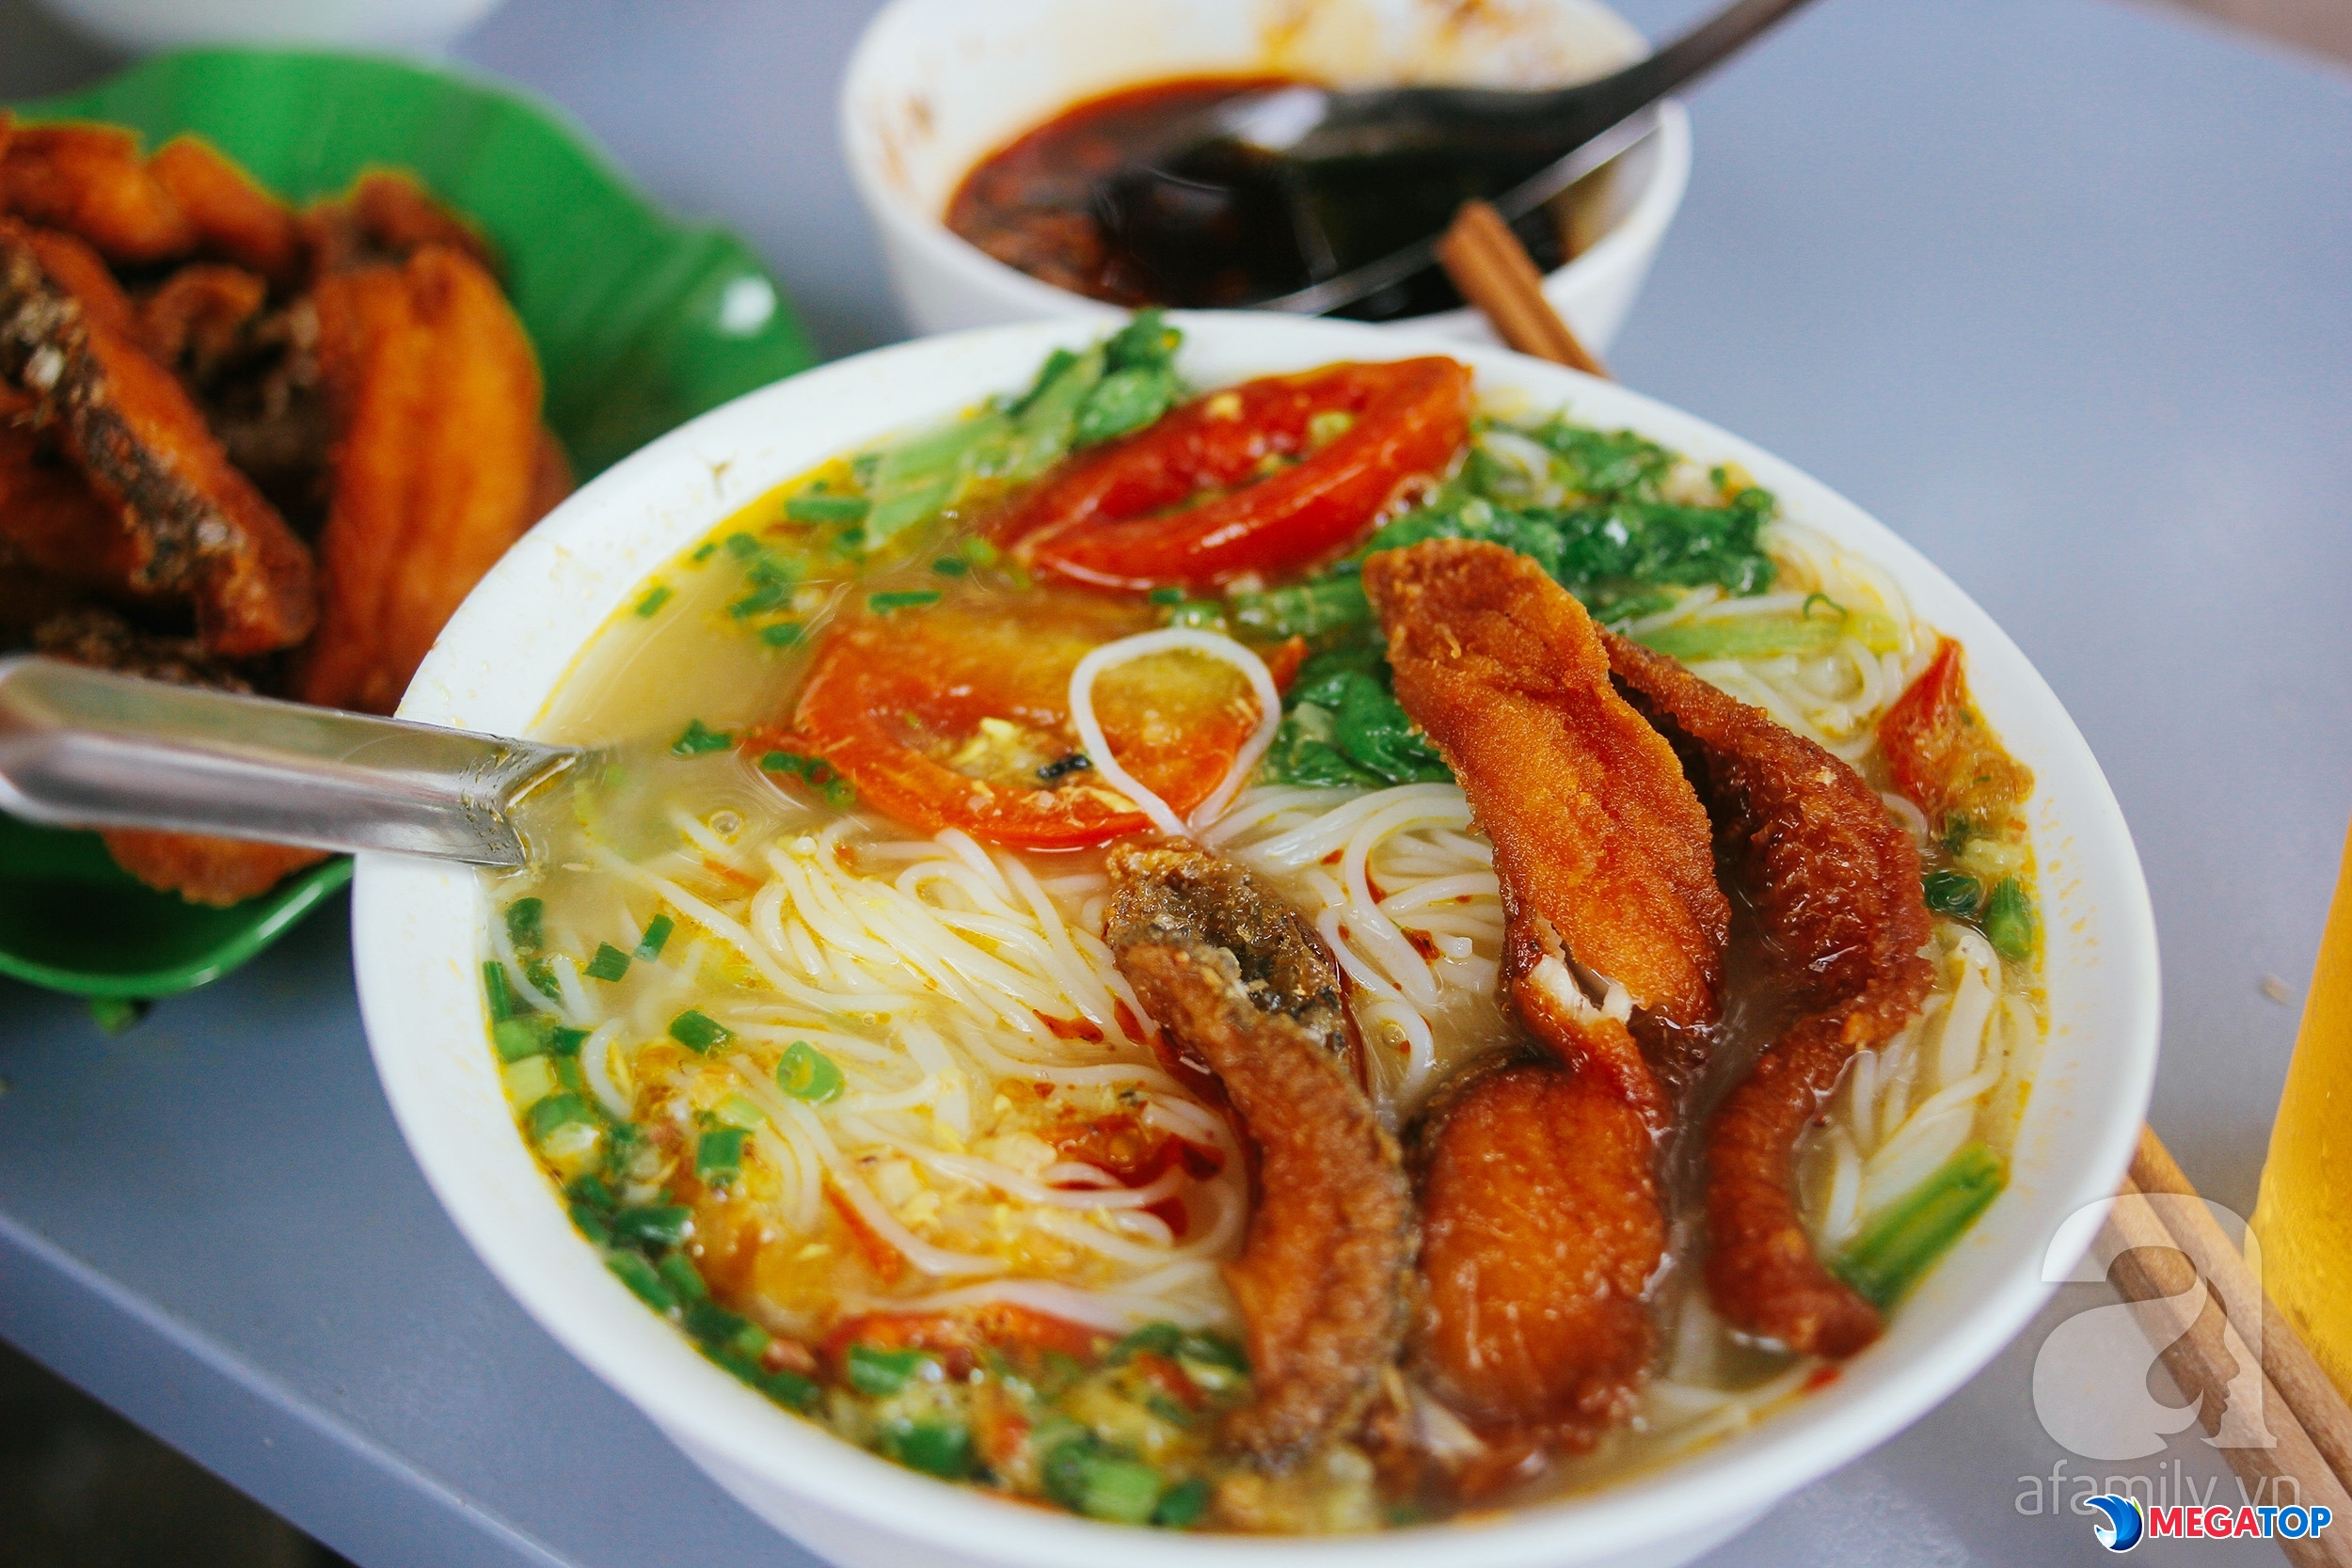 Top 10 quán bún đậu mắm tôm ngon nhất tại Hà Nội